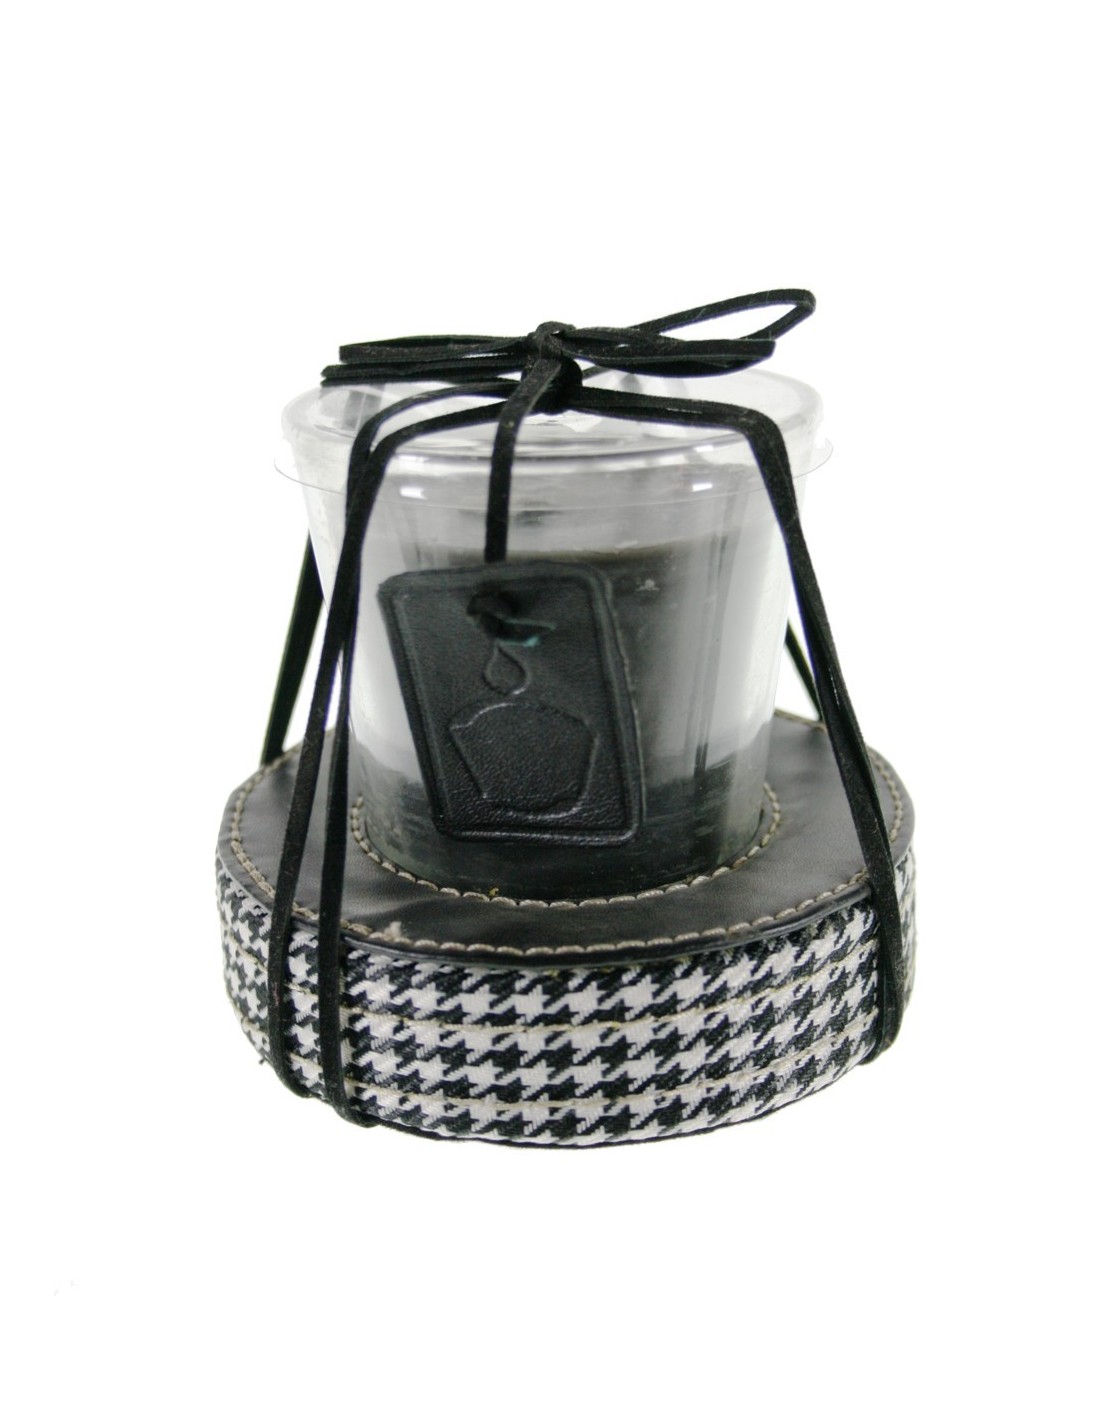 Espelma aromàtica en got per decorar de color negre ambient a la llar